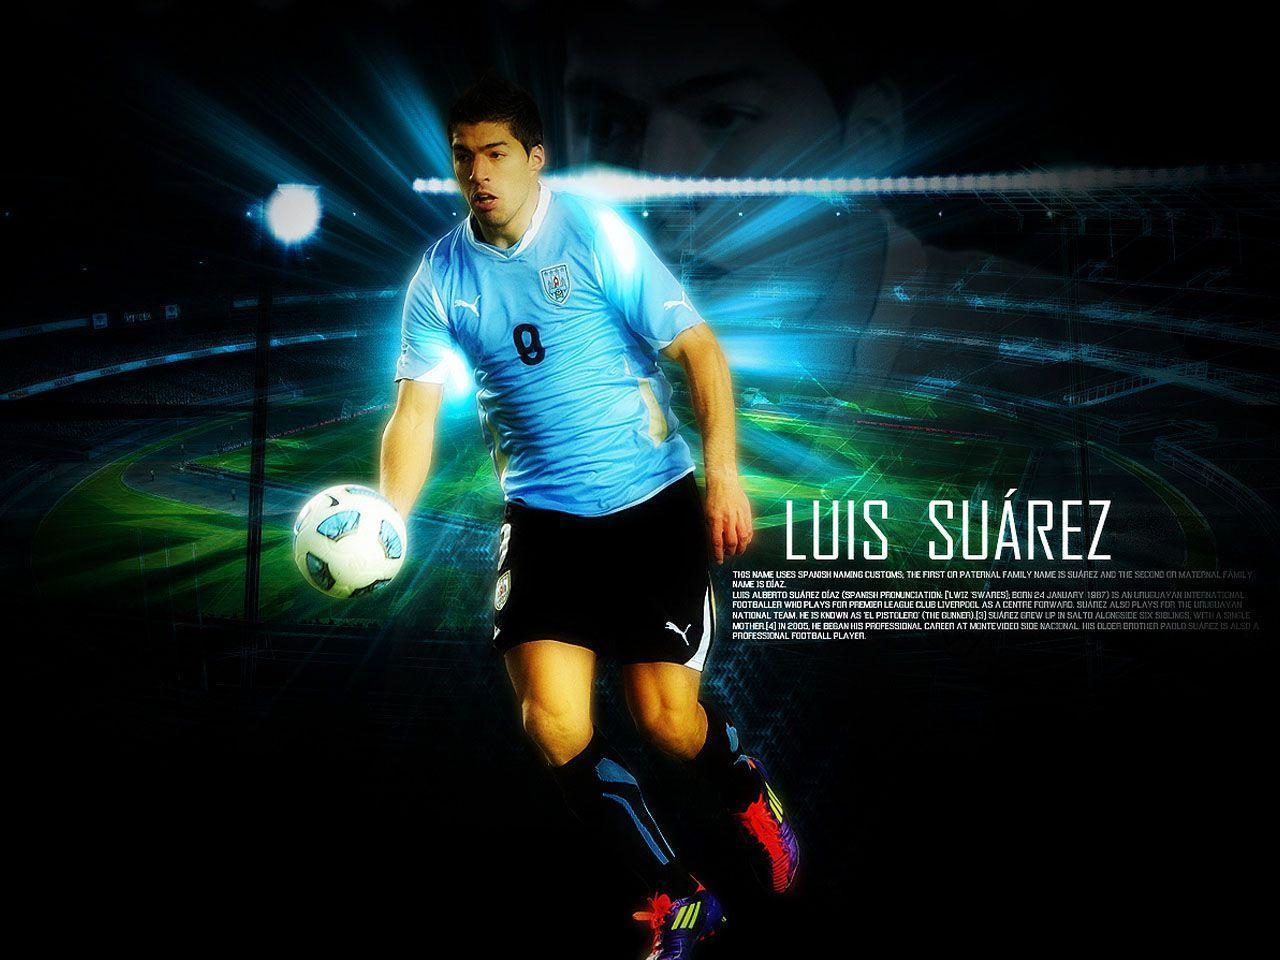 Luis Suarez Wallpaper, 4K Ultra HD Desktop Photo